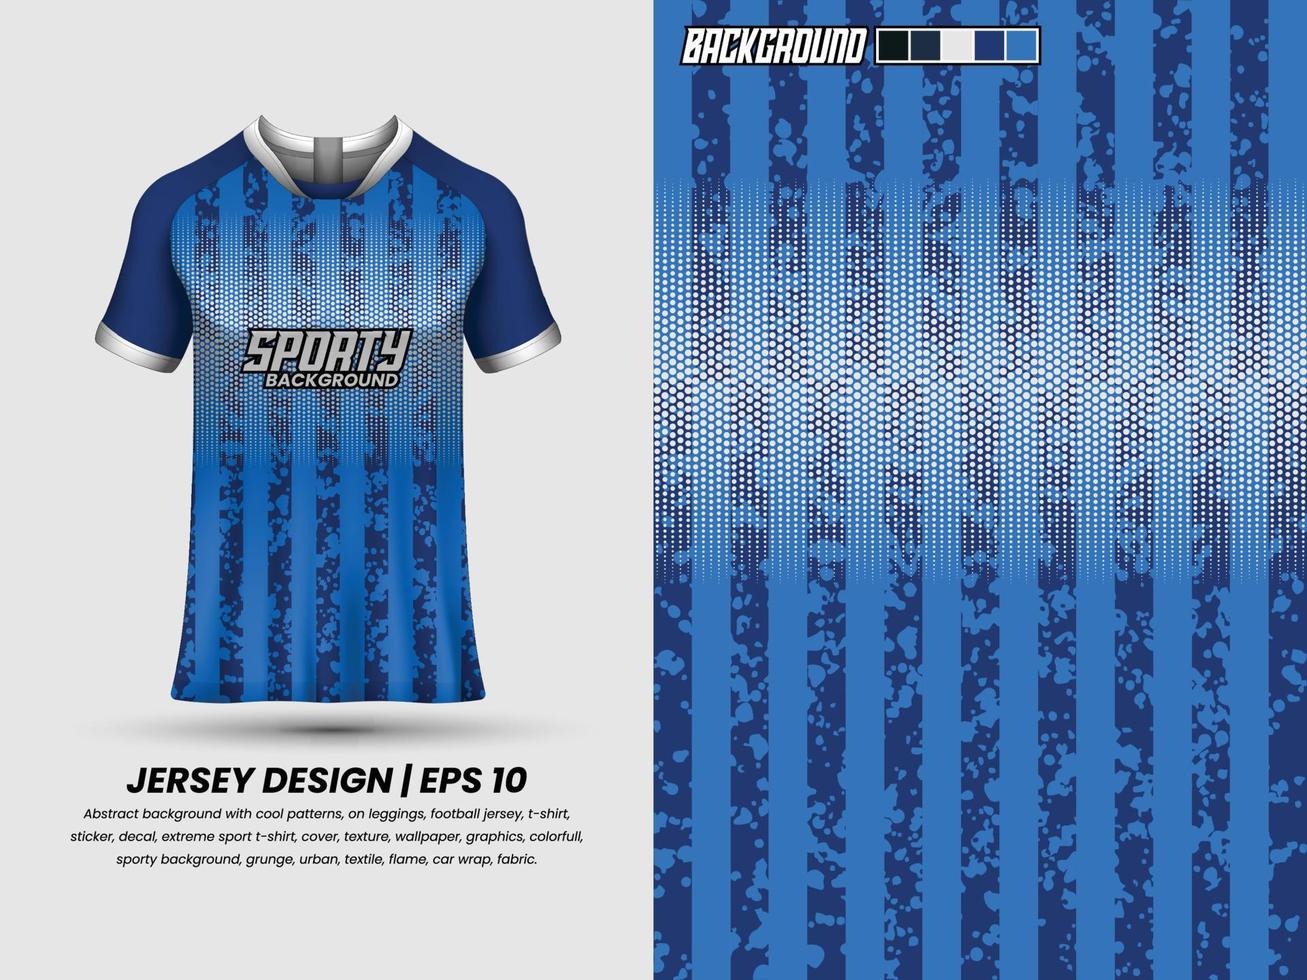 design de camisa de futebol para sublimação, design de camiseta esportiva, modelo de camisa vetor